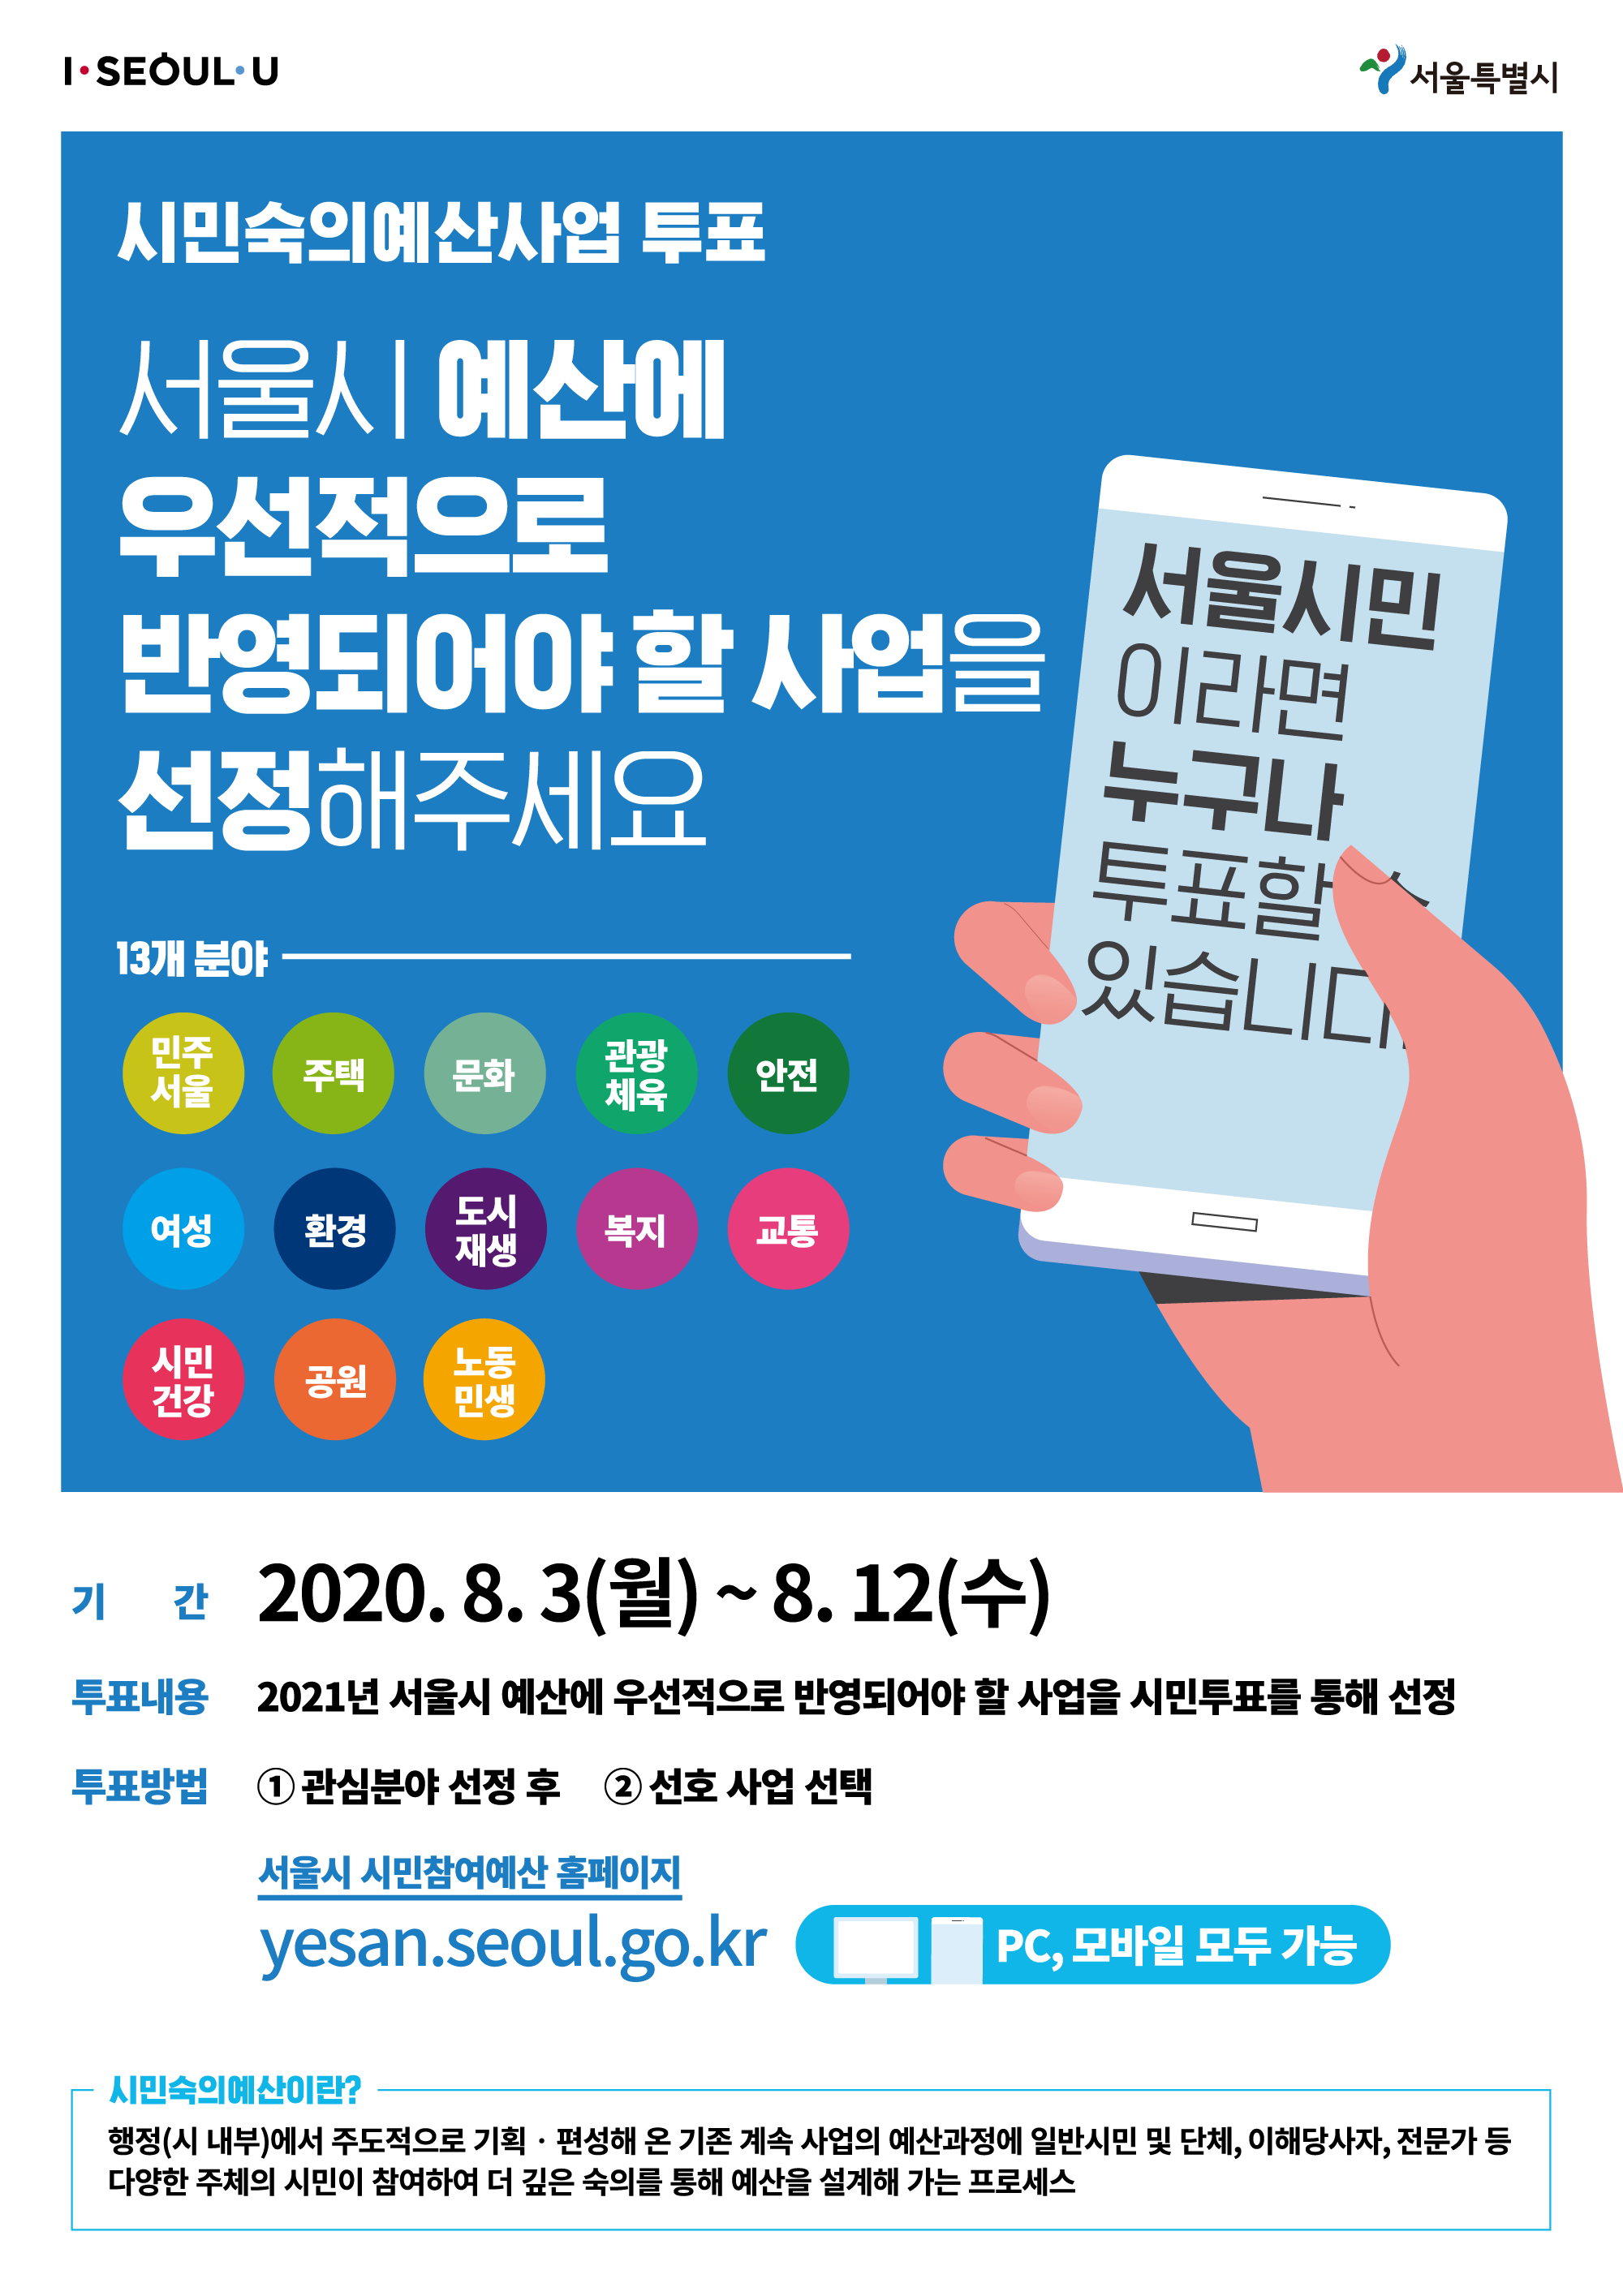 시민숙의예산사업 투표
서울시 예산에 우선적으로 반영되어야 할 사업을 선정해 주세요

서울시민이라면 누구나 투표할 수 있습니다.